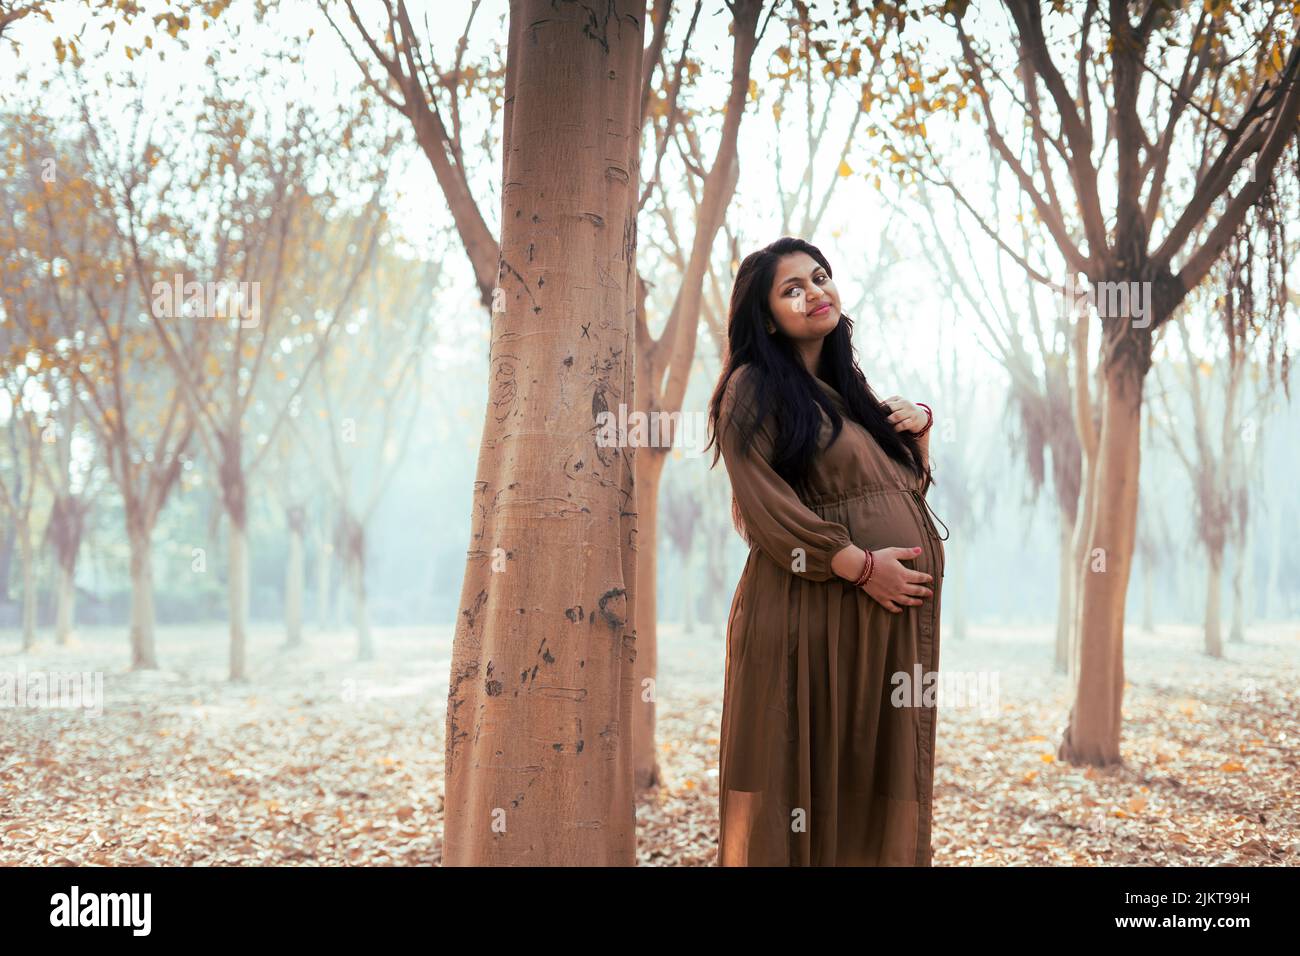 Eine junge, schöne, schwanger weibliche Person, die ihren Bauch in einem Park hält Stockfoto